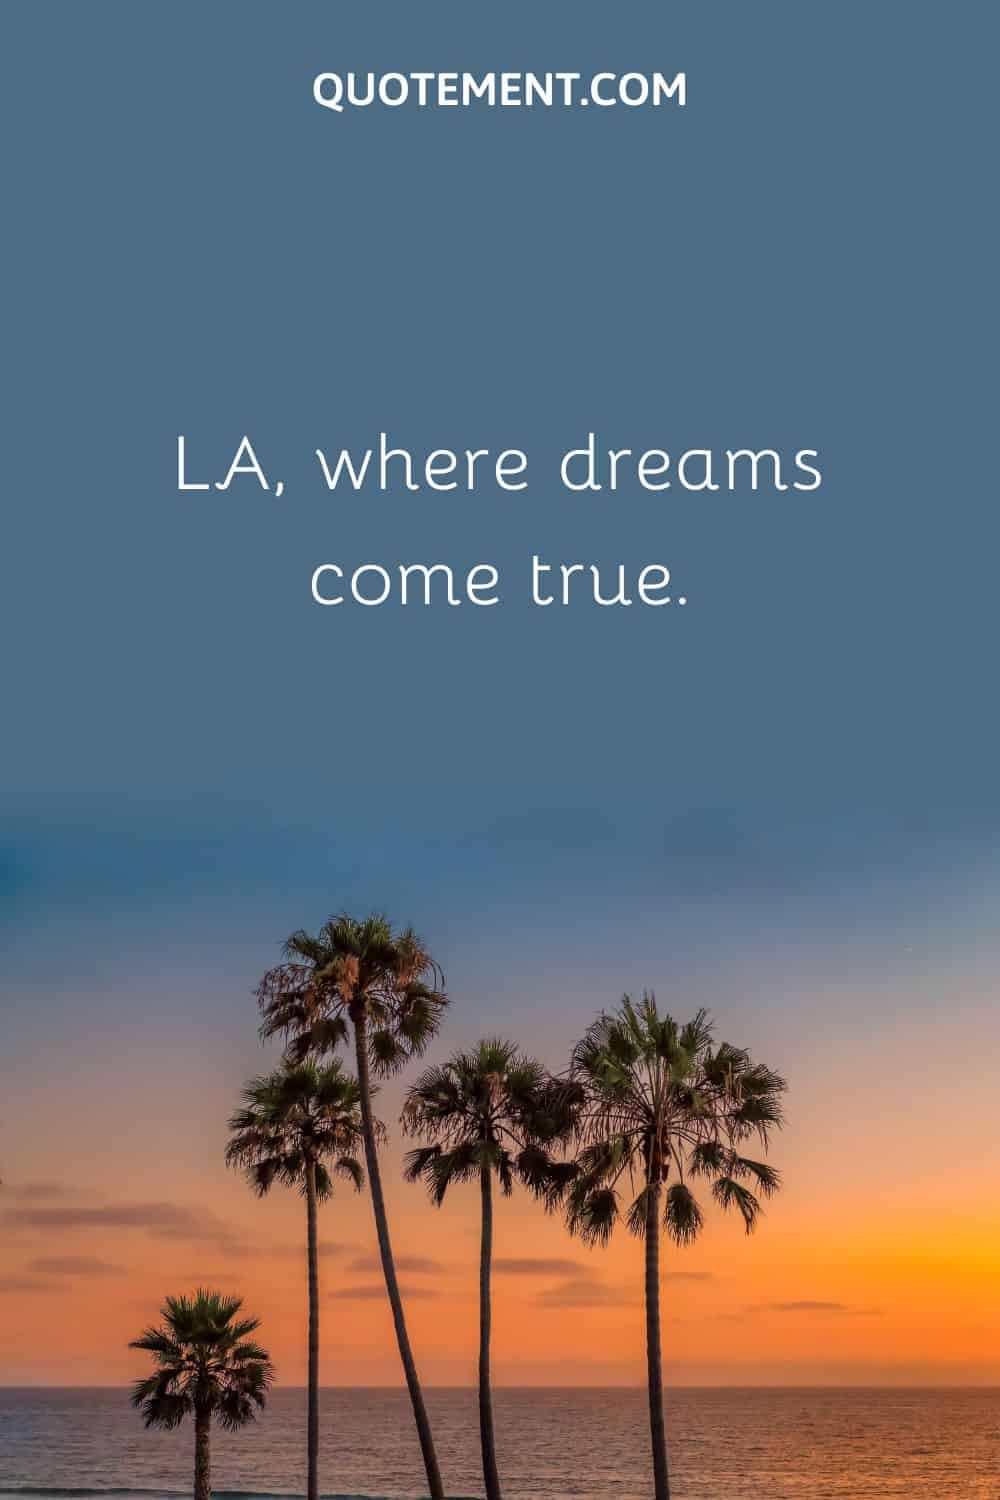 LA, where dreams come true